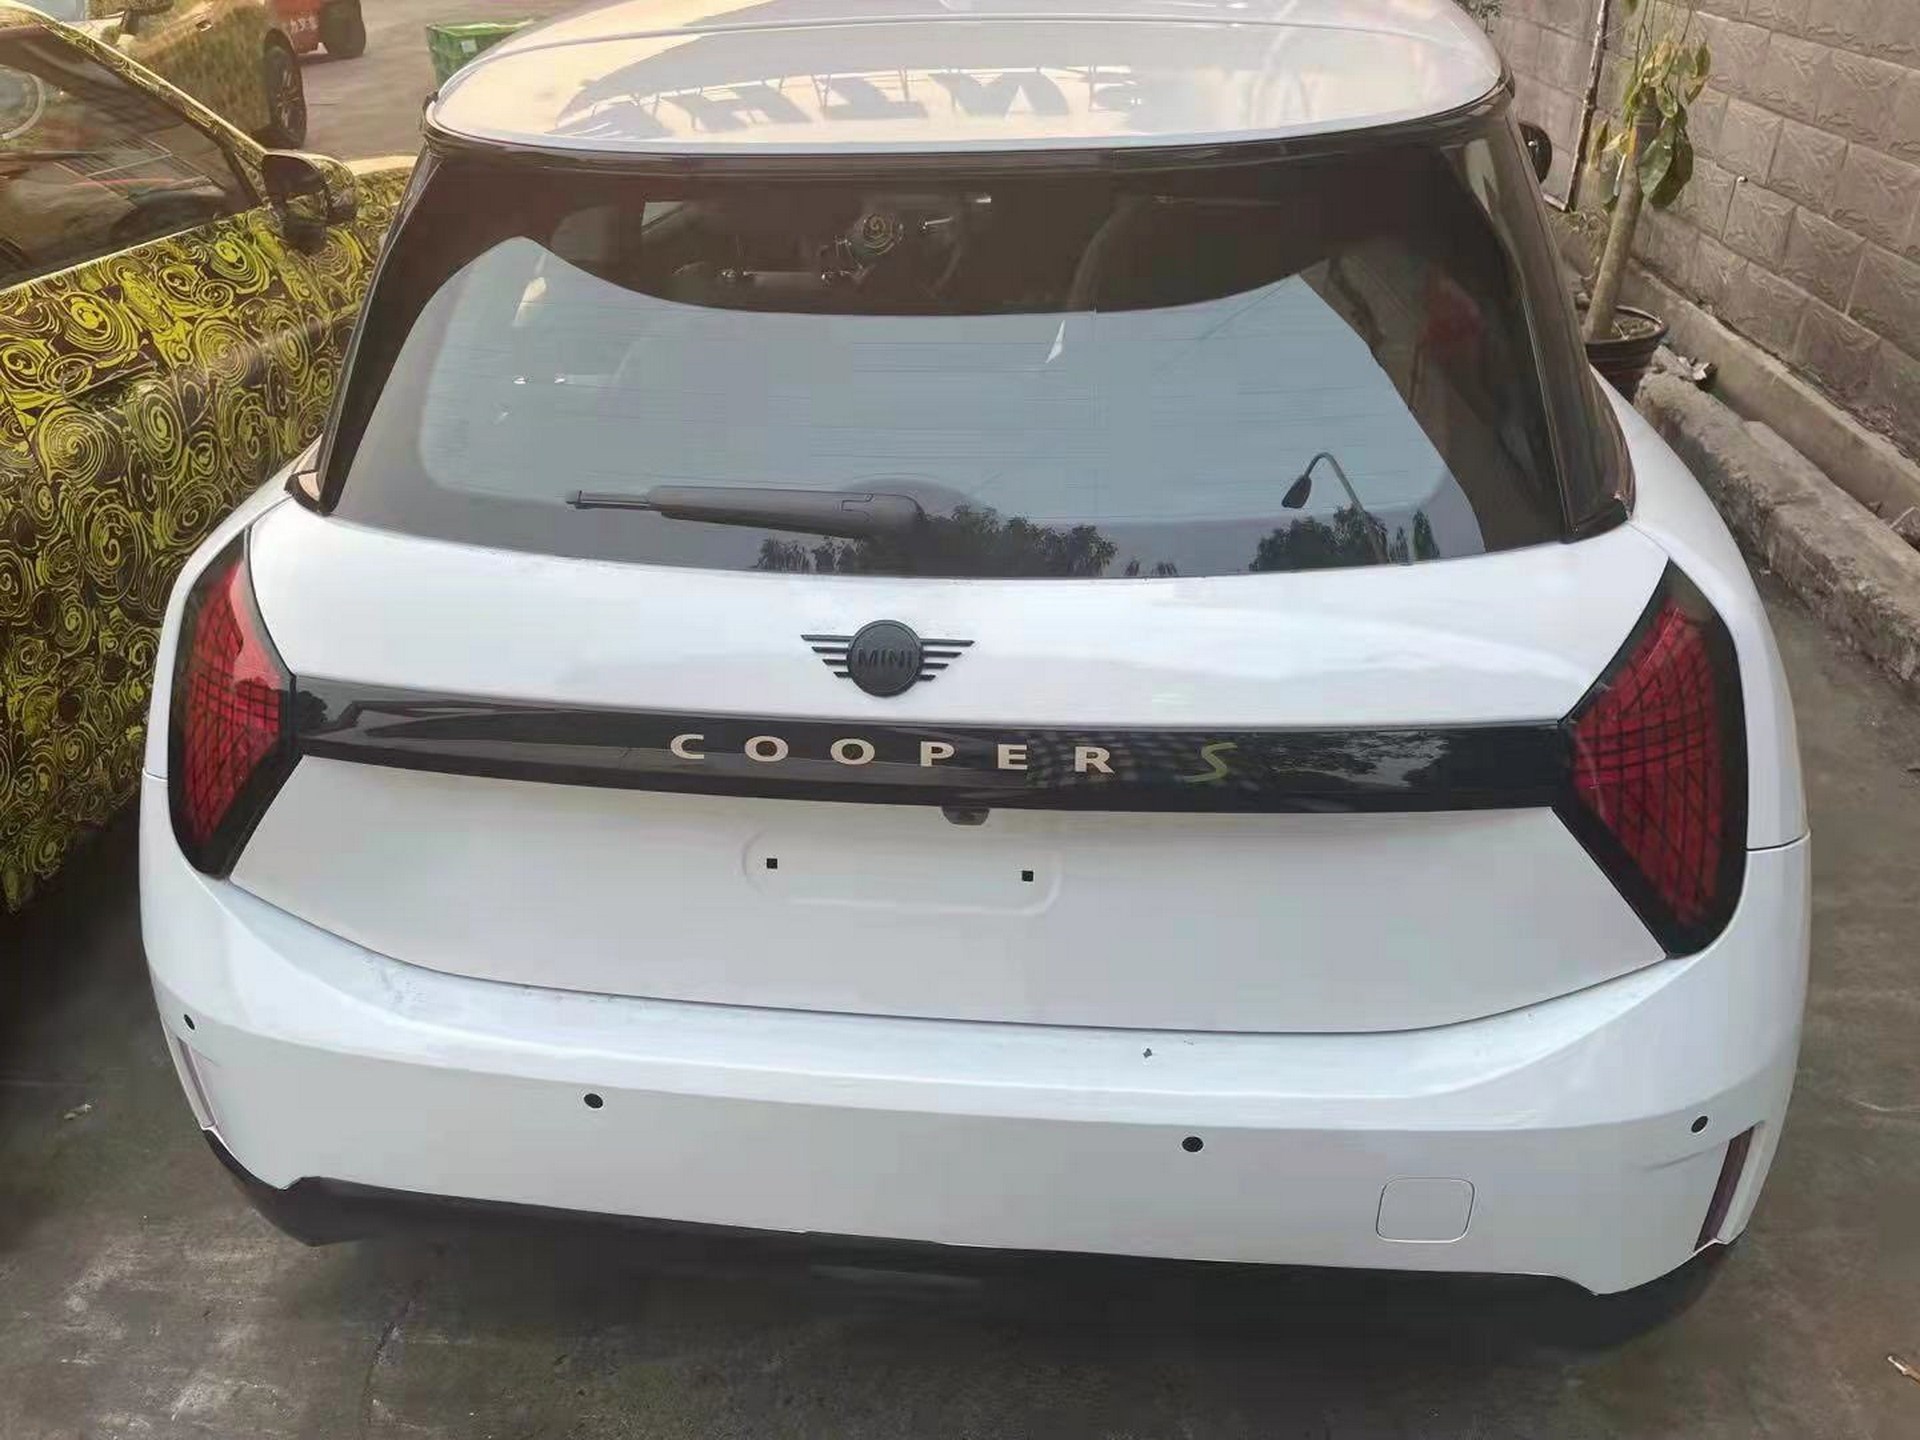 Yeni nesil 2023 Mini Cooper S'in tasarımı ortaya çıktı